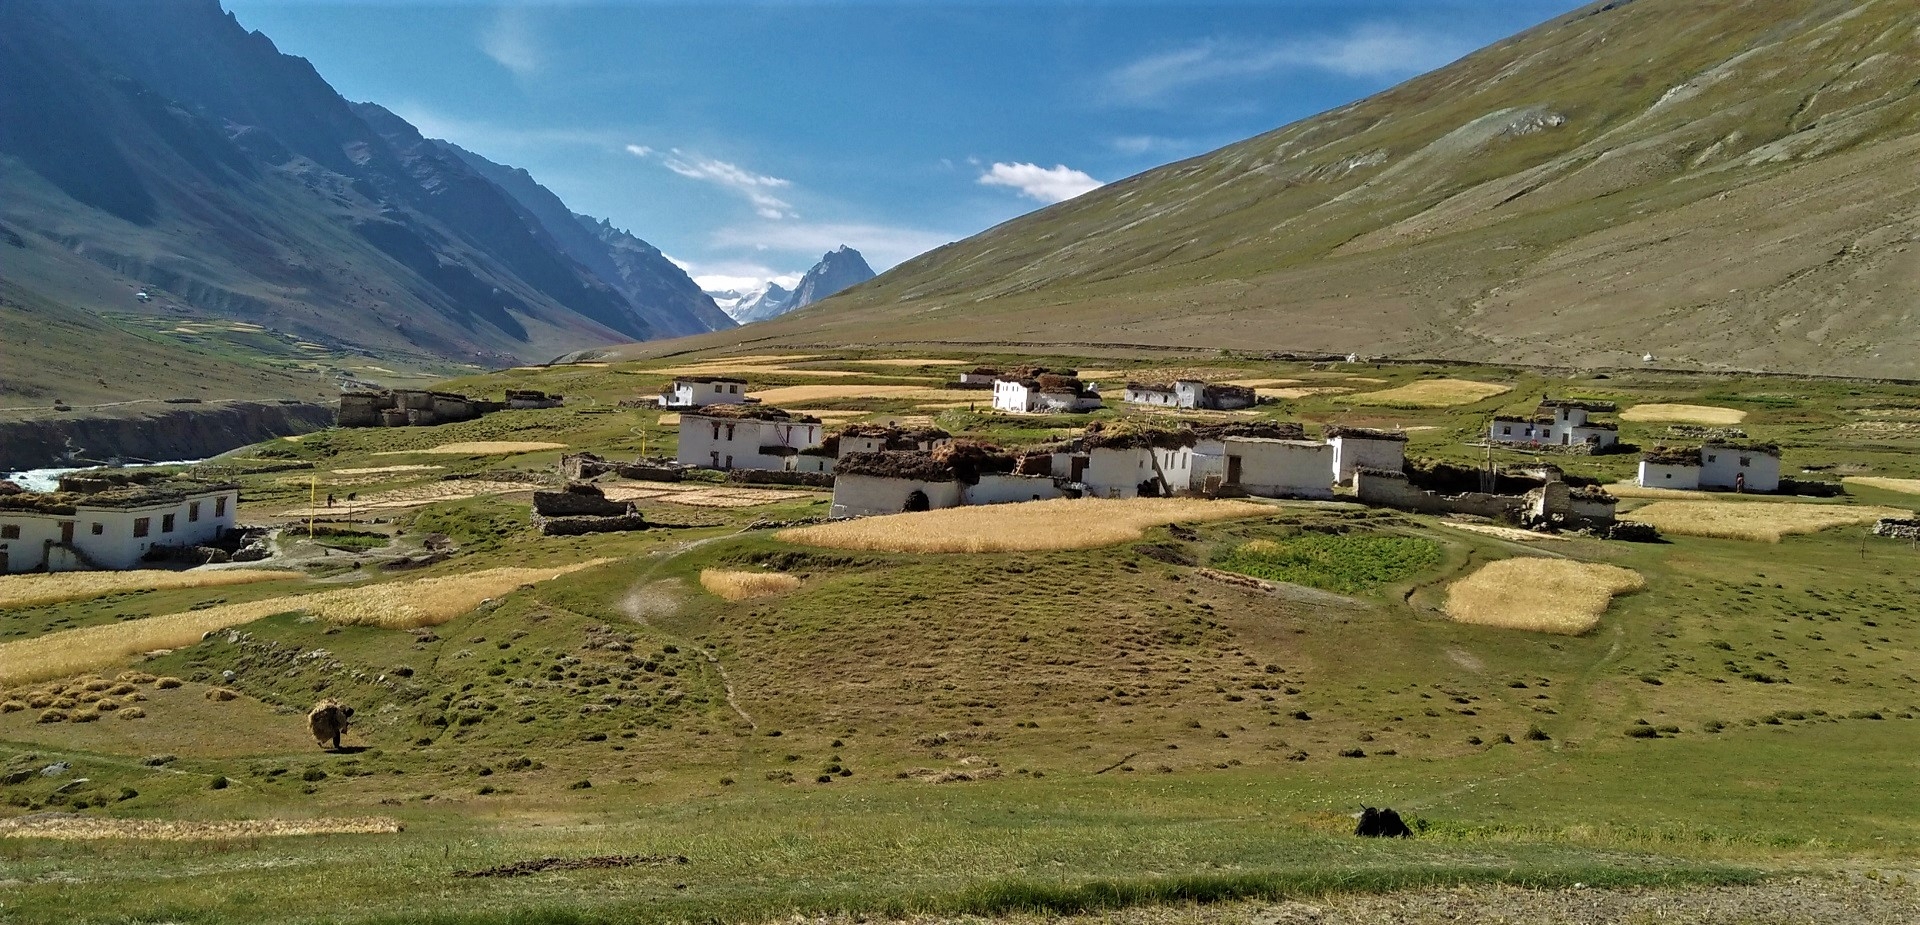 The Great Zanskar Traverse